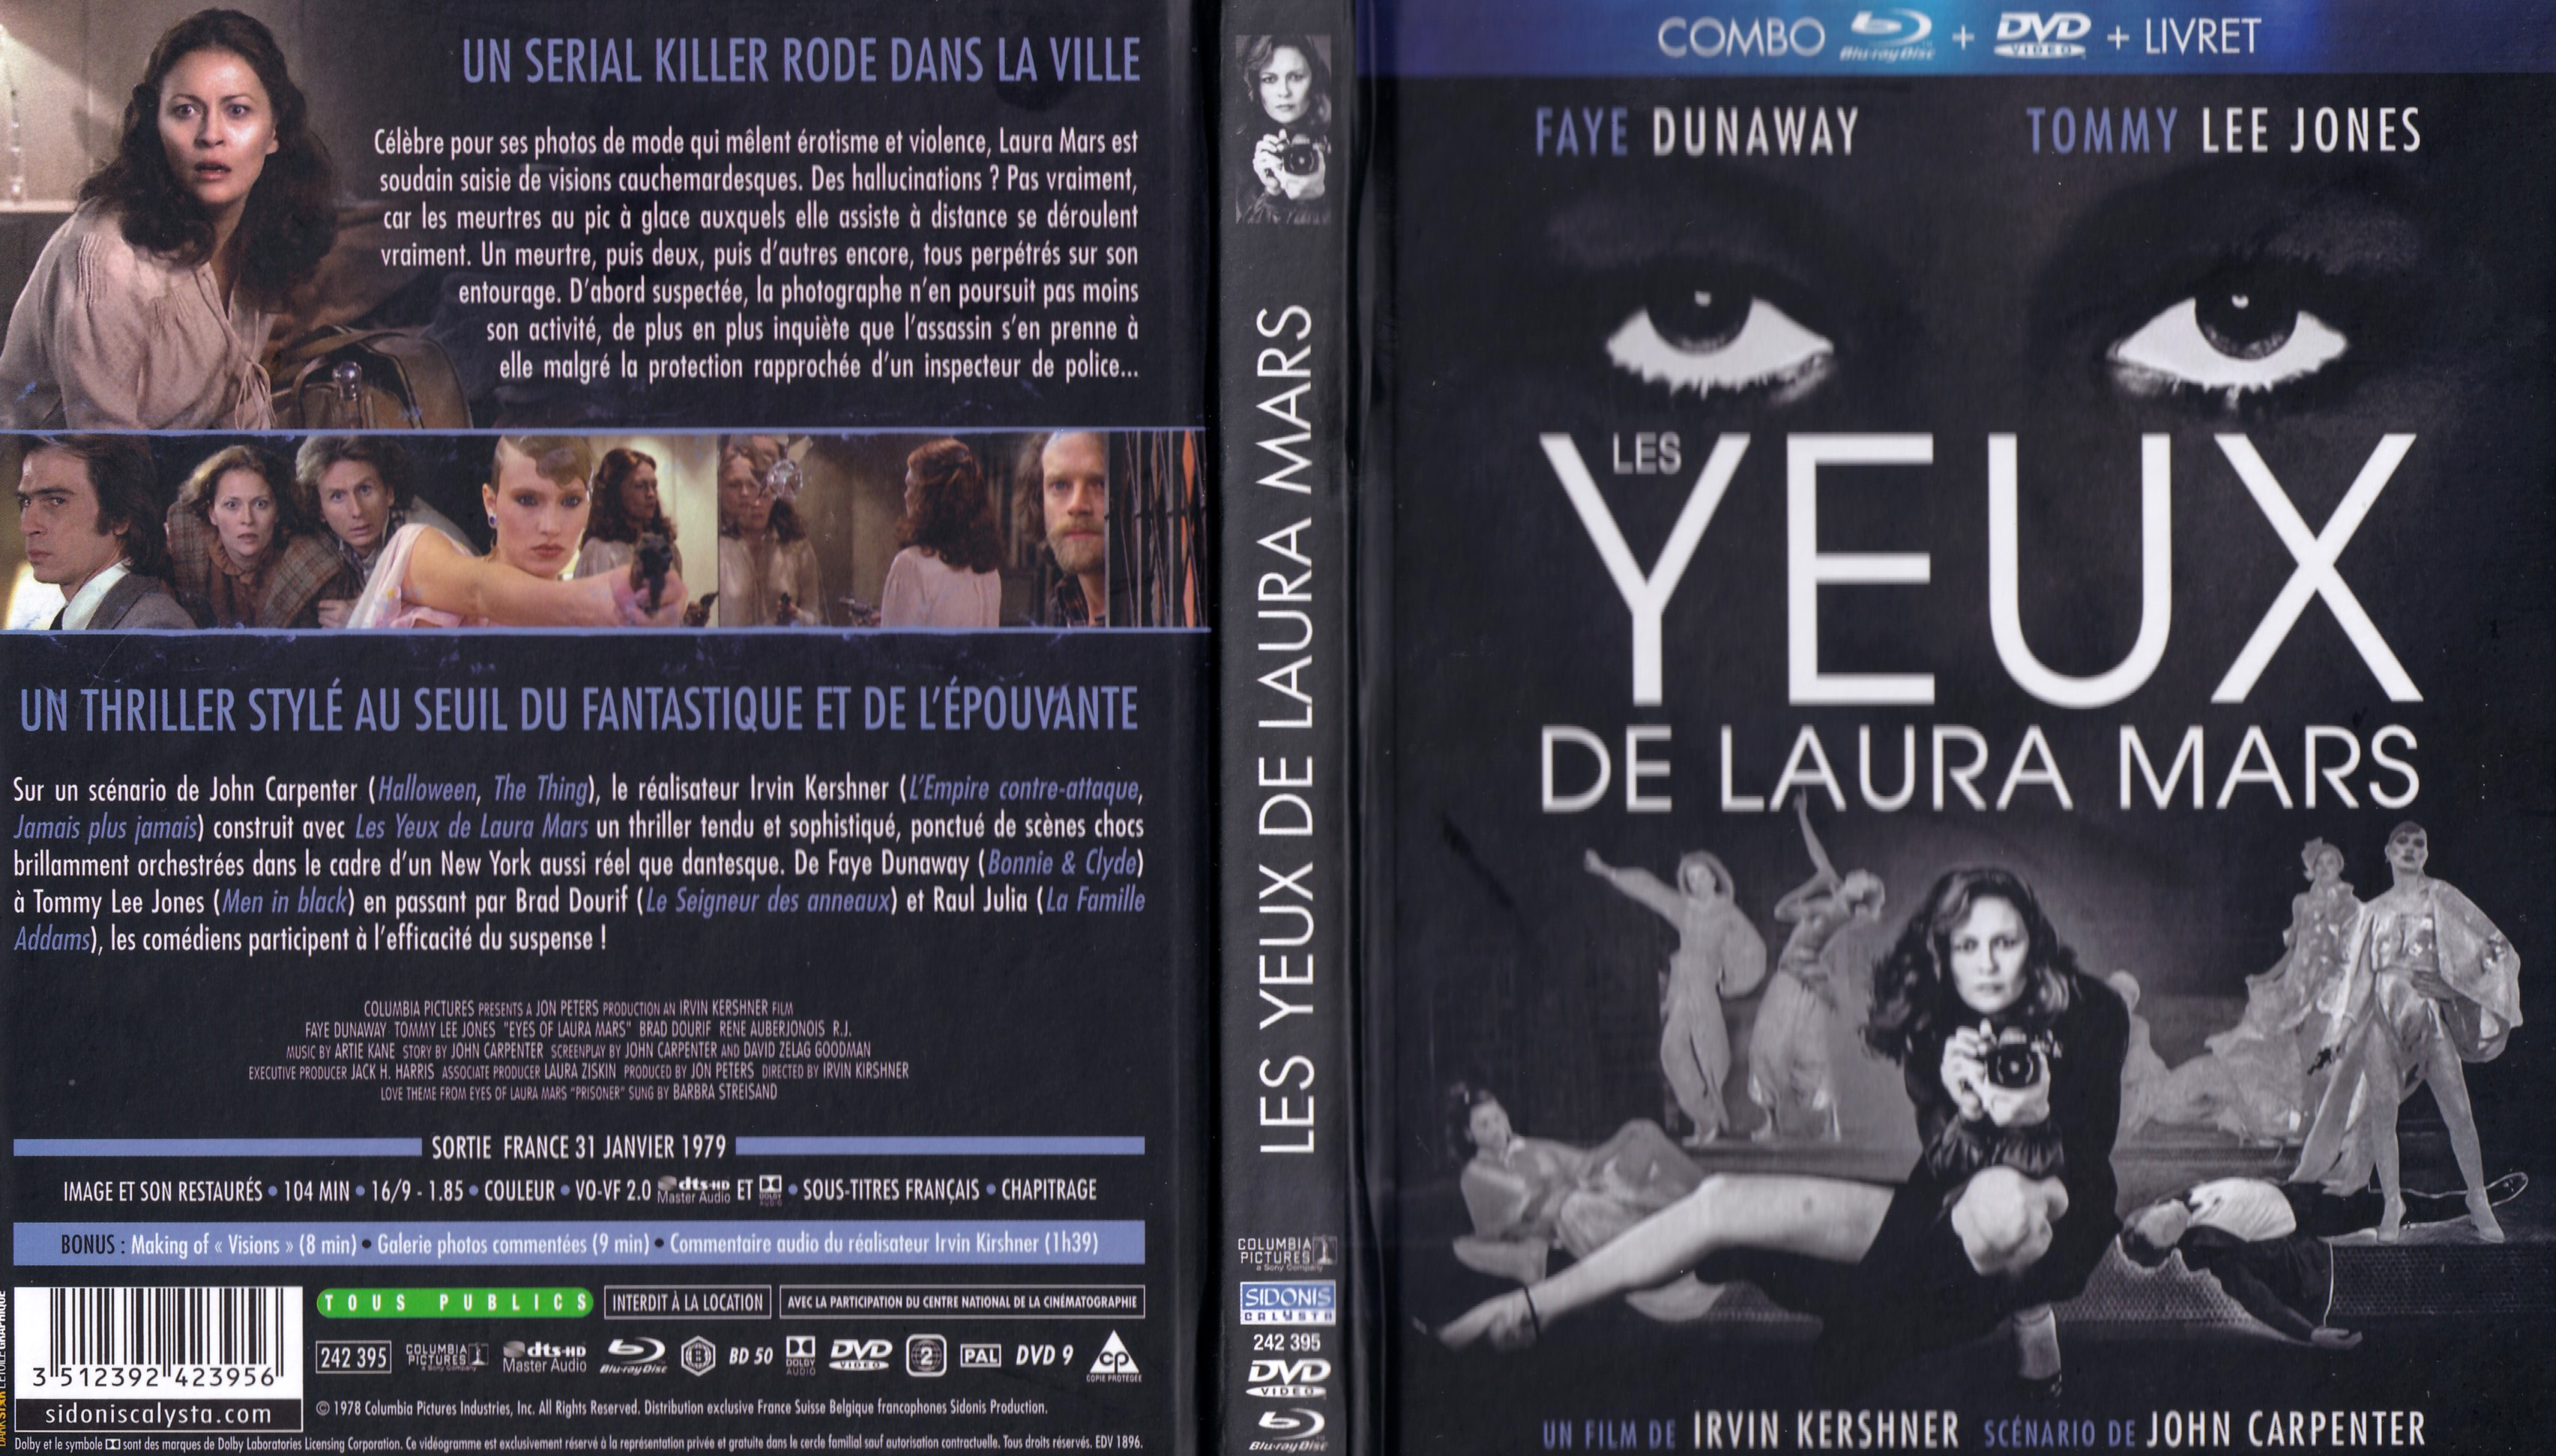 Jaquette DVD Les yeux de Laura Mars (BLU-RAY)